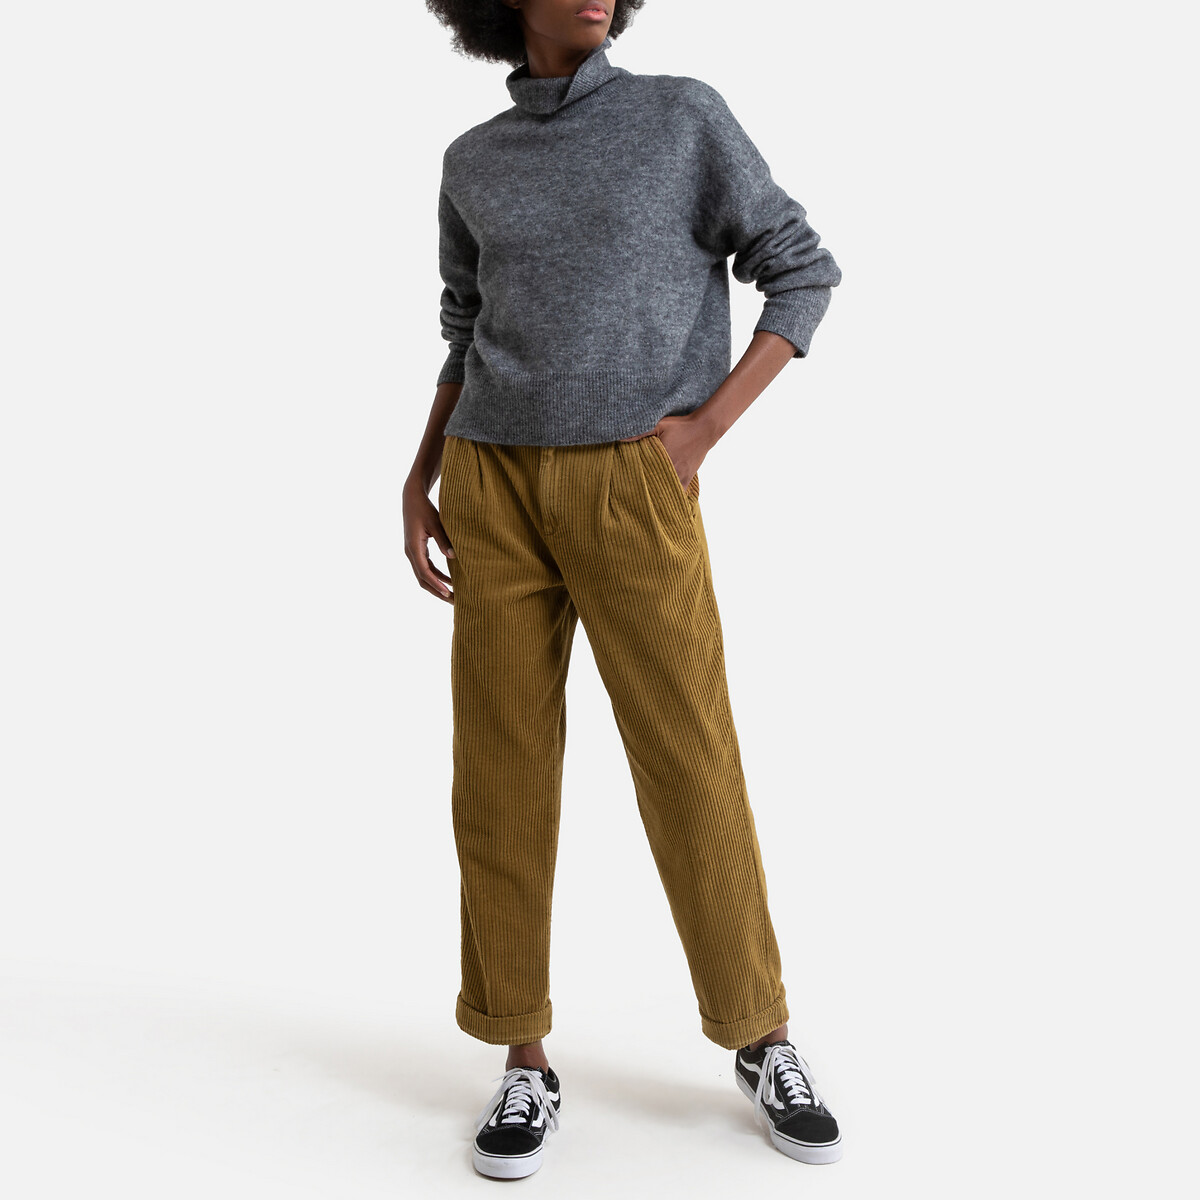 Пуловер La Redoute С воротником-стойкой из плотного трикотажа L серый, размер L - фото 2